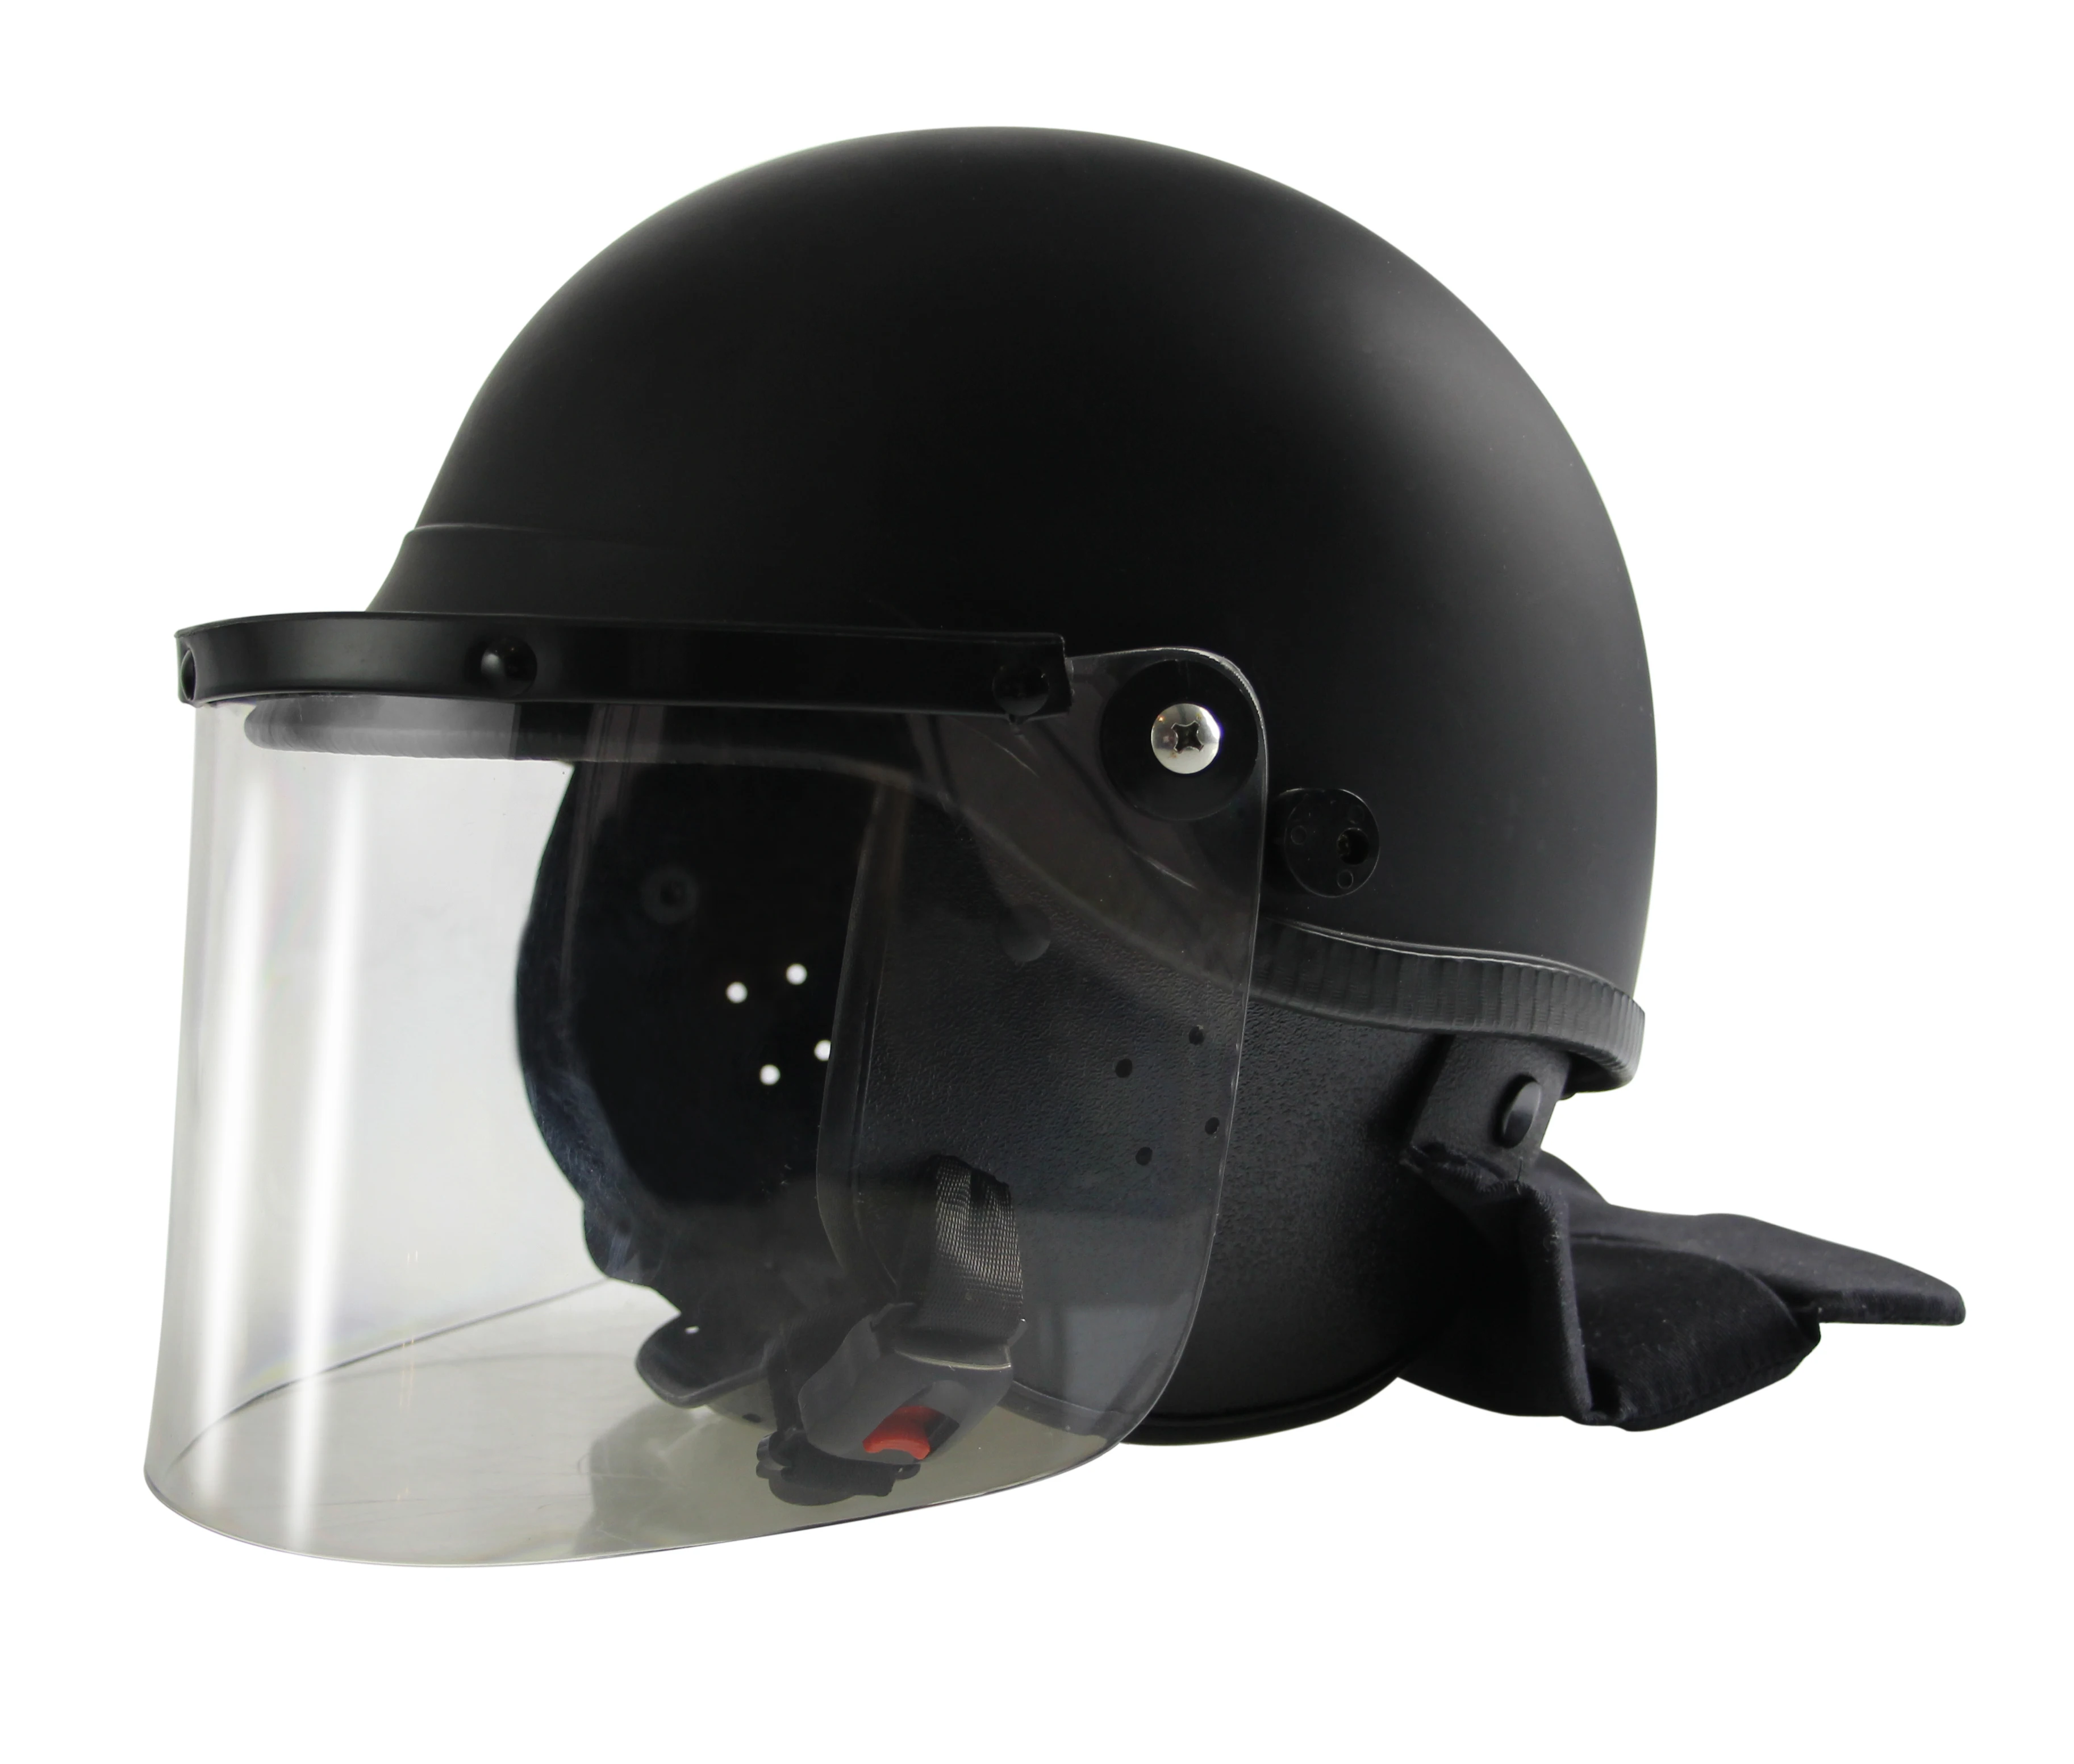 abs 军事警察装备警察防暴头盔与遮阳颈部保护